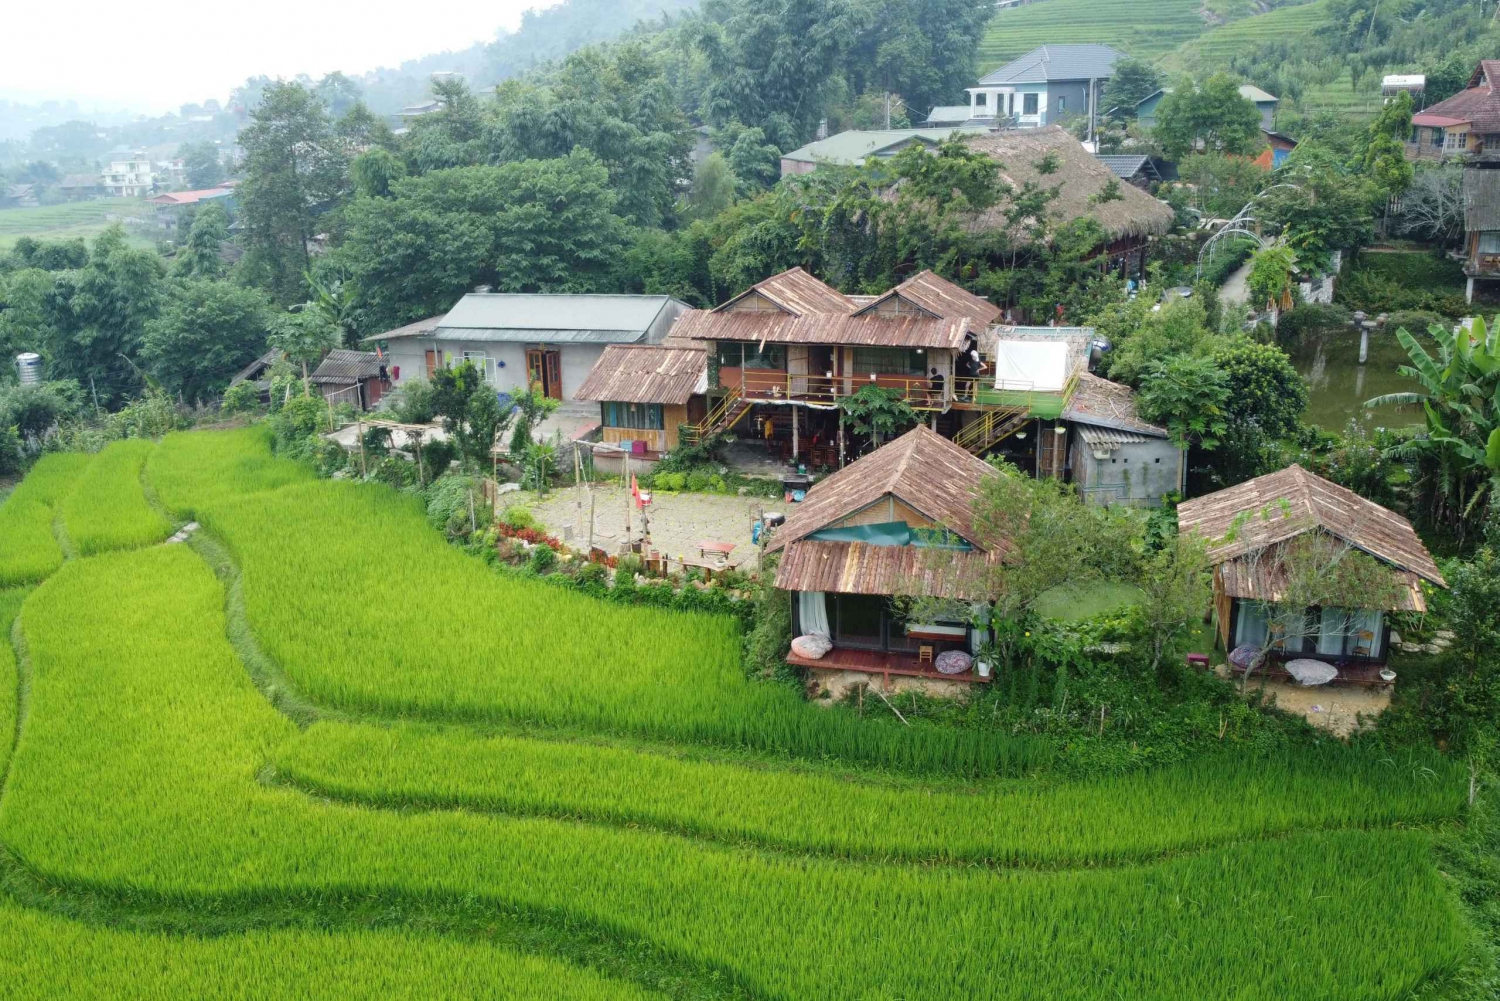 Hanoista: Sapa 3 päivää 2 yötä ja Trekking Village